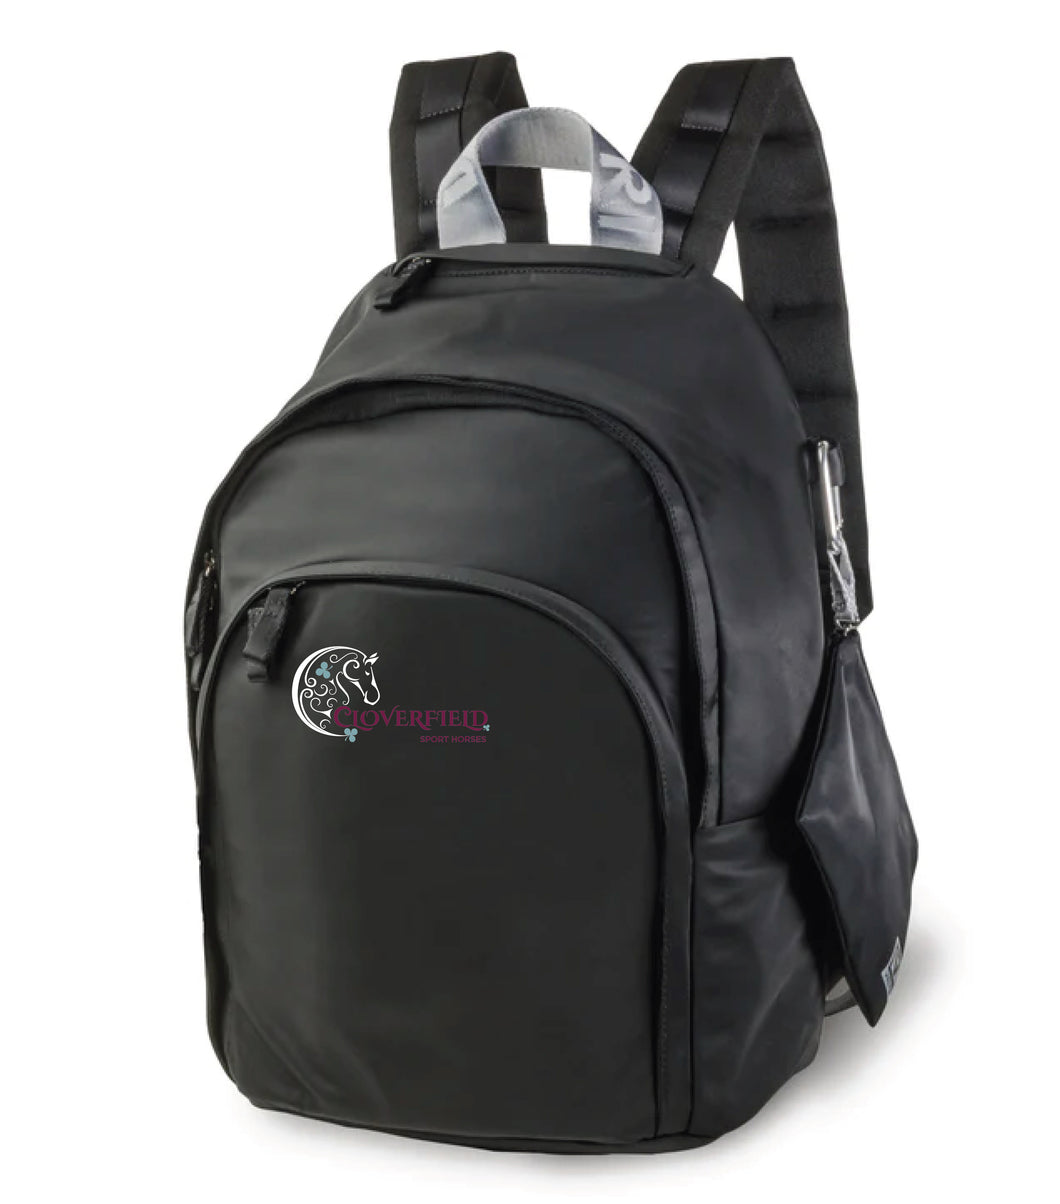 Cloverfield SH- Veltri Sport- Rider Backpack